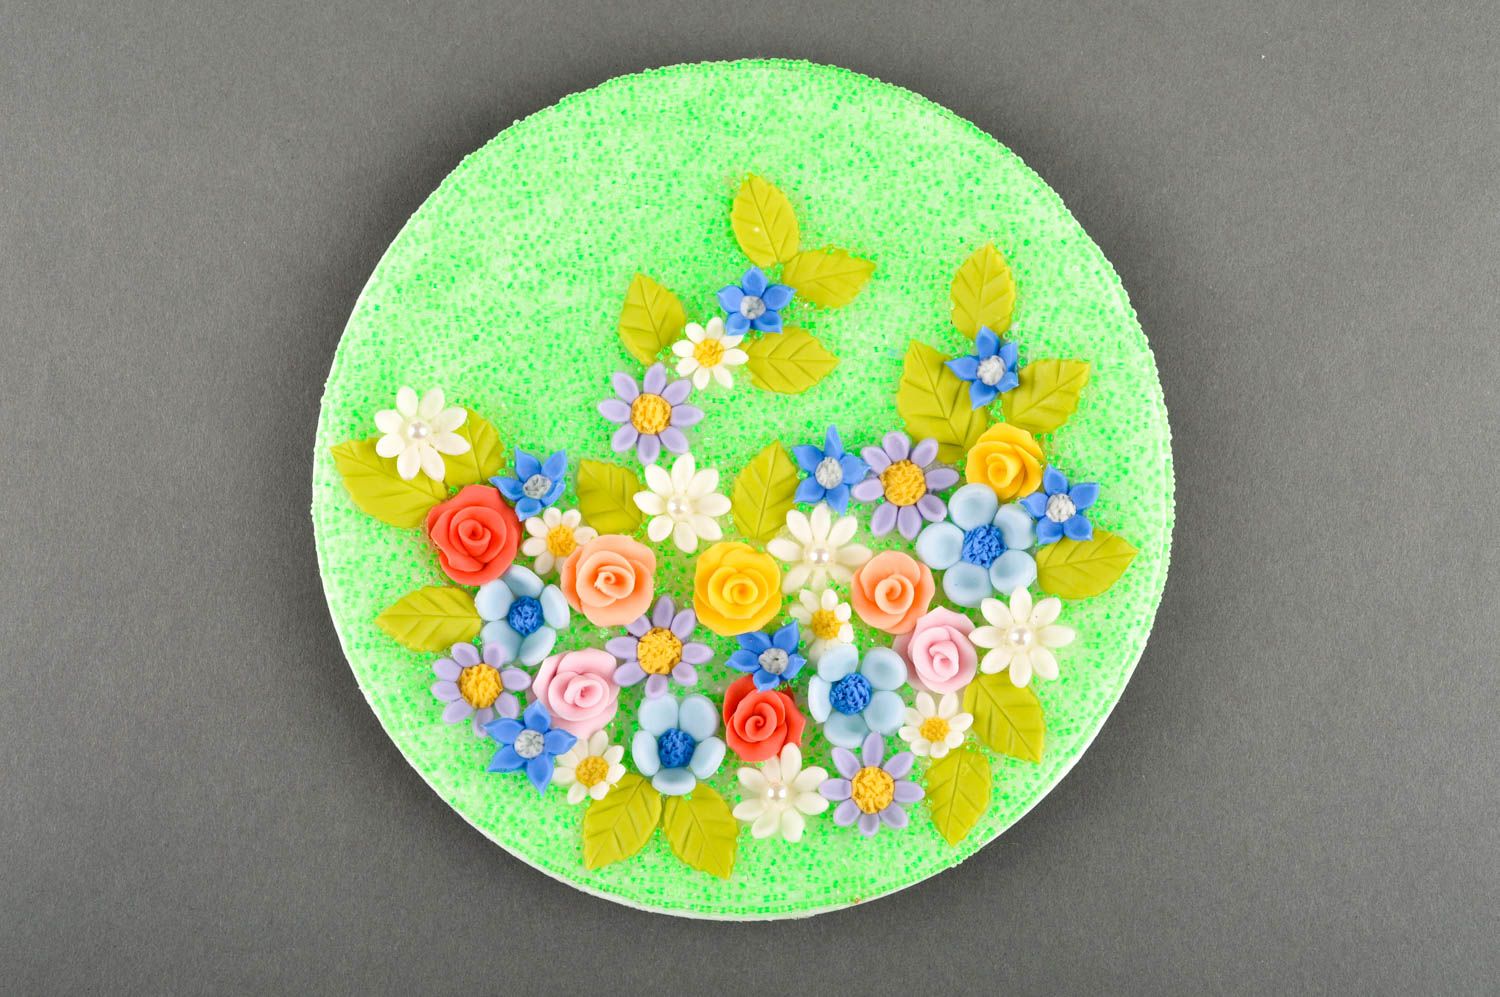 Свадебная тарелка хэнд мэйд посуда на свадьбу красивая посуда цветочная тарелка фото 3